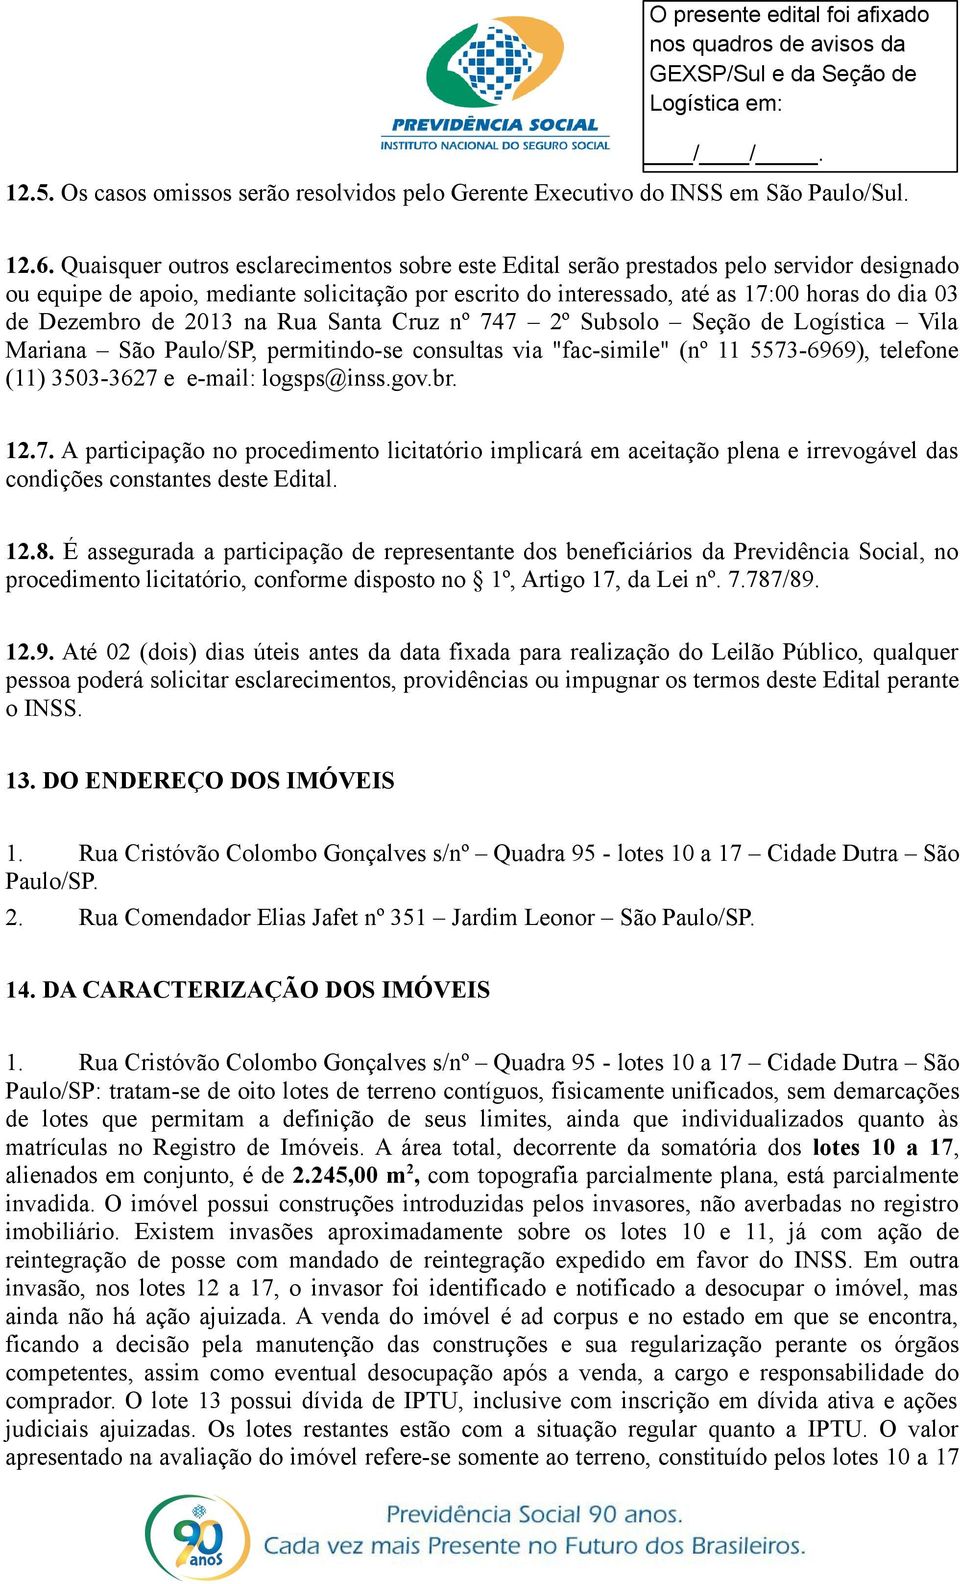 Dezembro de 2013 na Rua Santa Cruz nº 747 2º Subsolo Seção de Logística Vila Mariana São Paulo/SP, permitindo-se consultas via "fac-simile" (nº 11 5573-6969), telefone (11) 3503-3627 e e-mail: